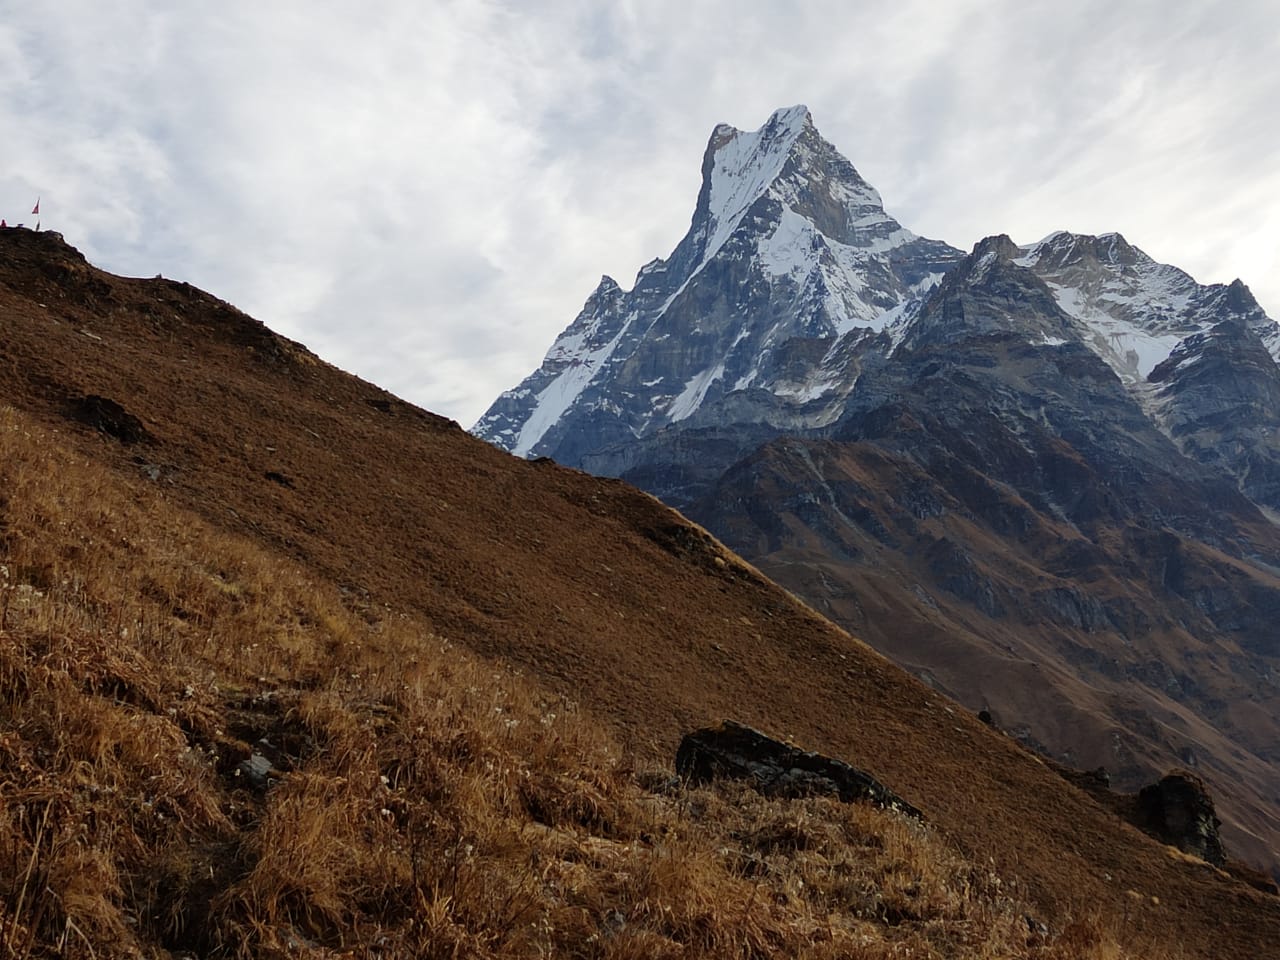 Day 06: High Camp trek to Mardi Himal Base Camp 4,500m 14,763ft